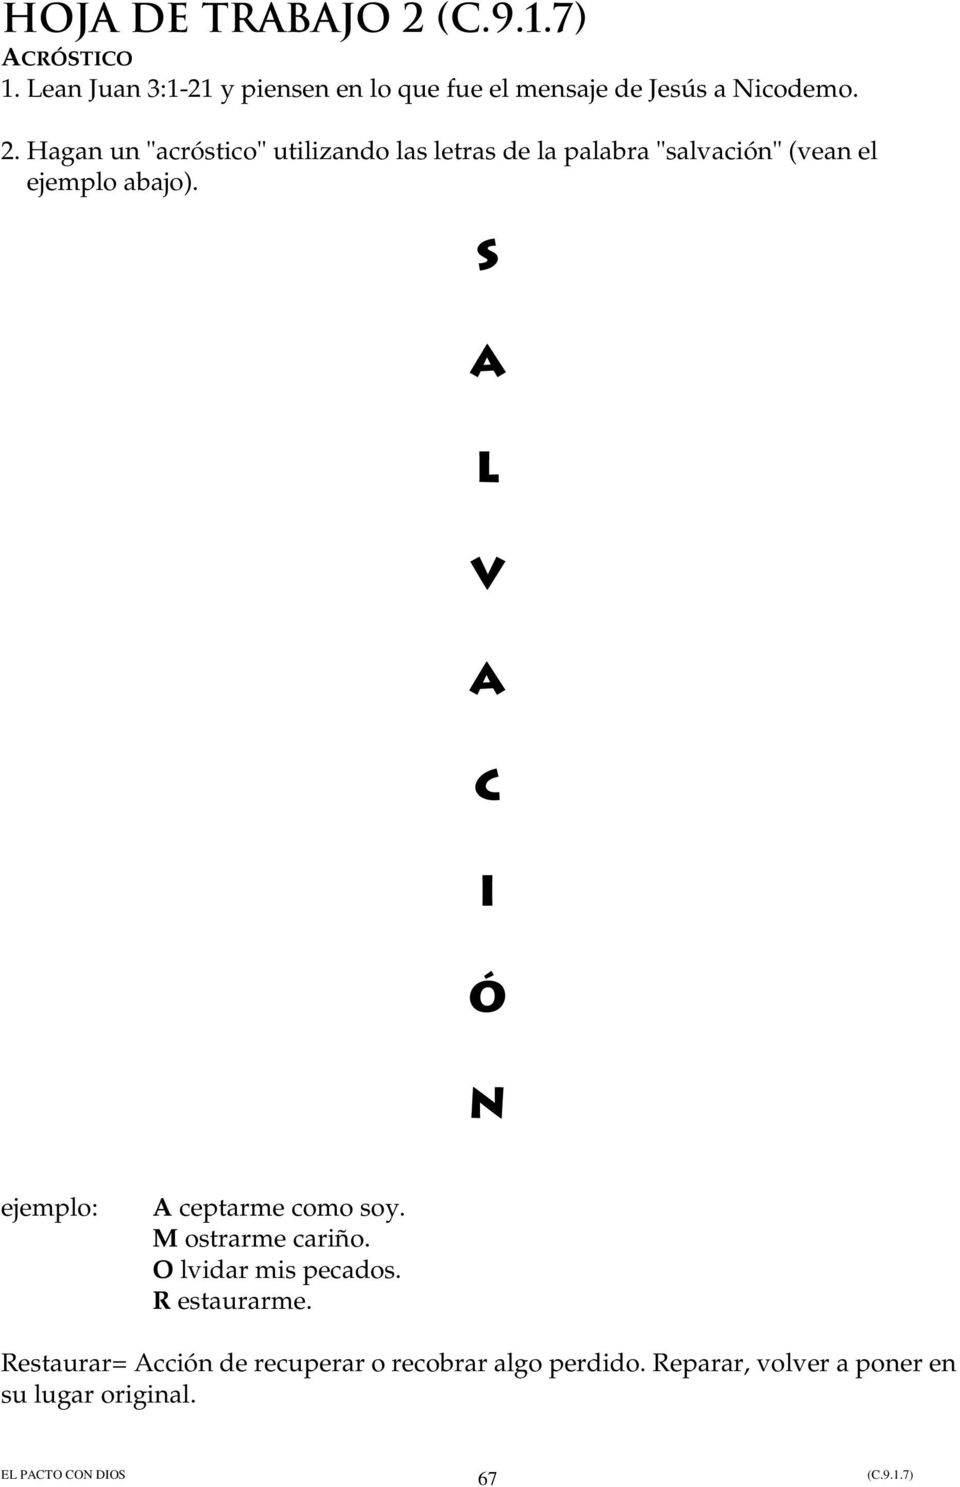 Hagan un "acróstico" utilizando las letras de la palabra "salvación" (vean el ejemplo abajo).